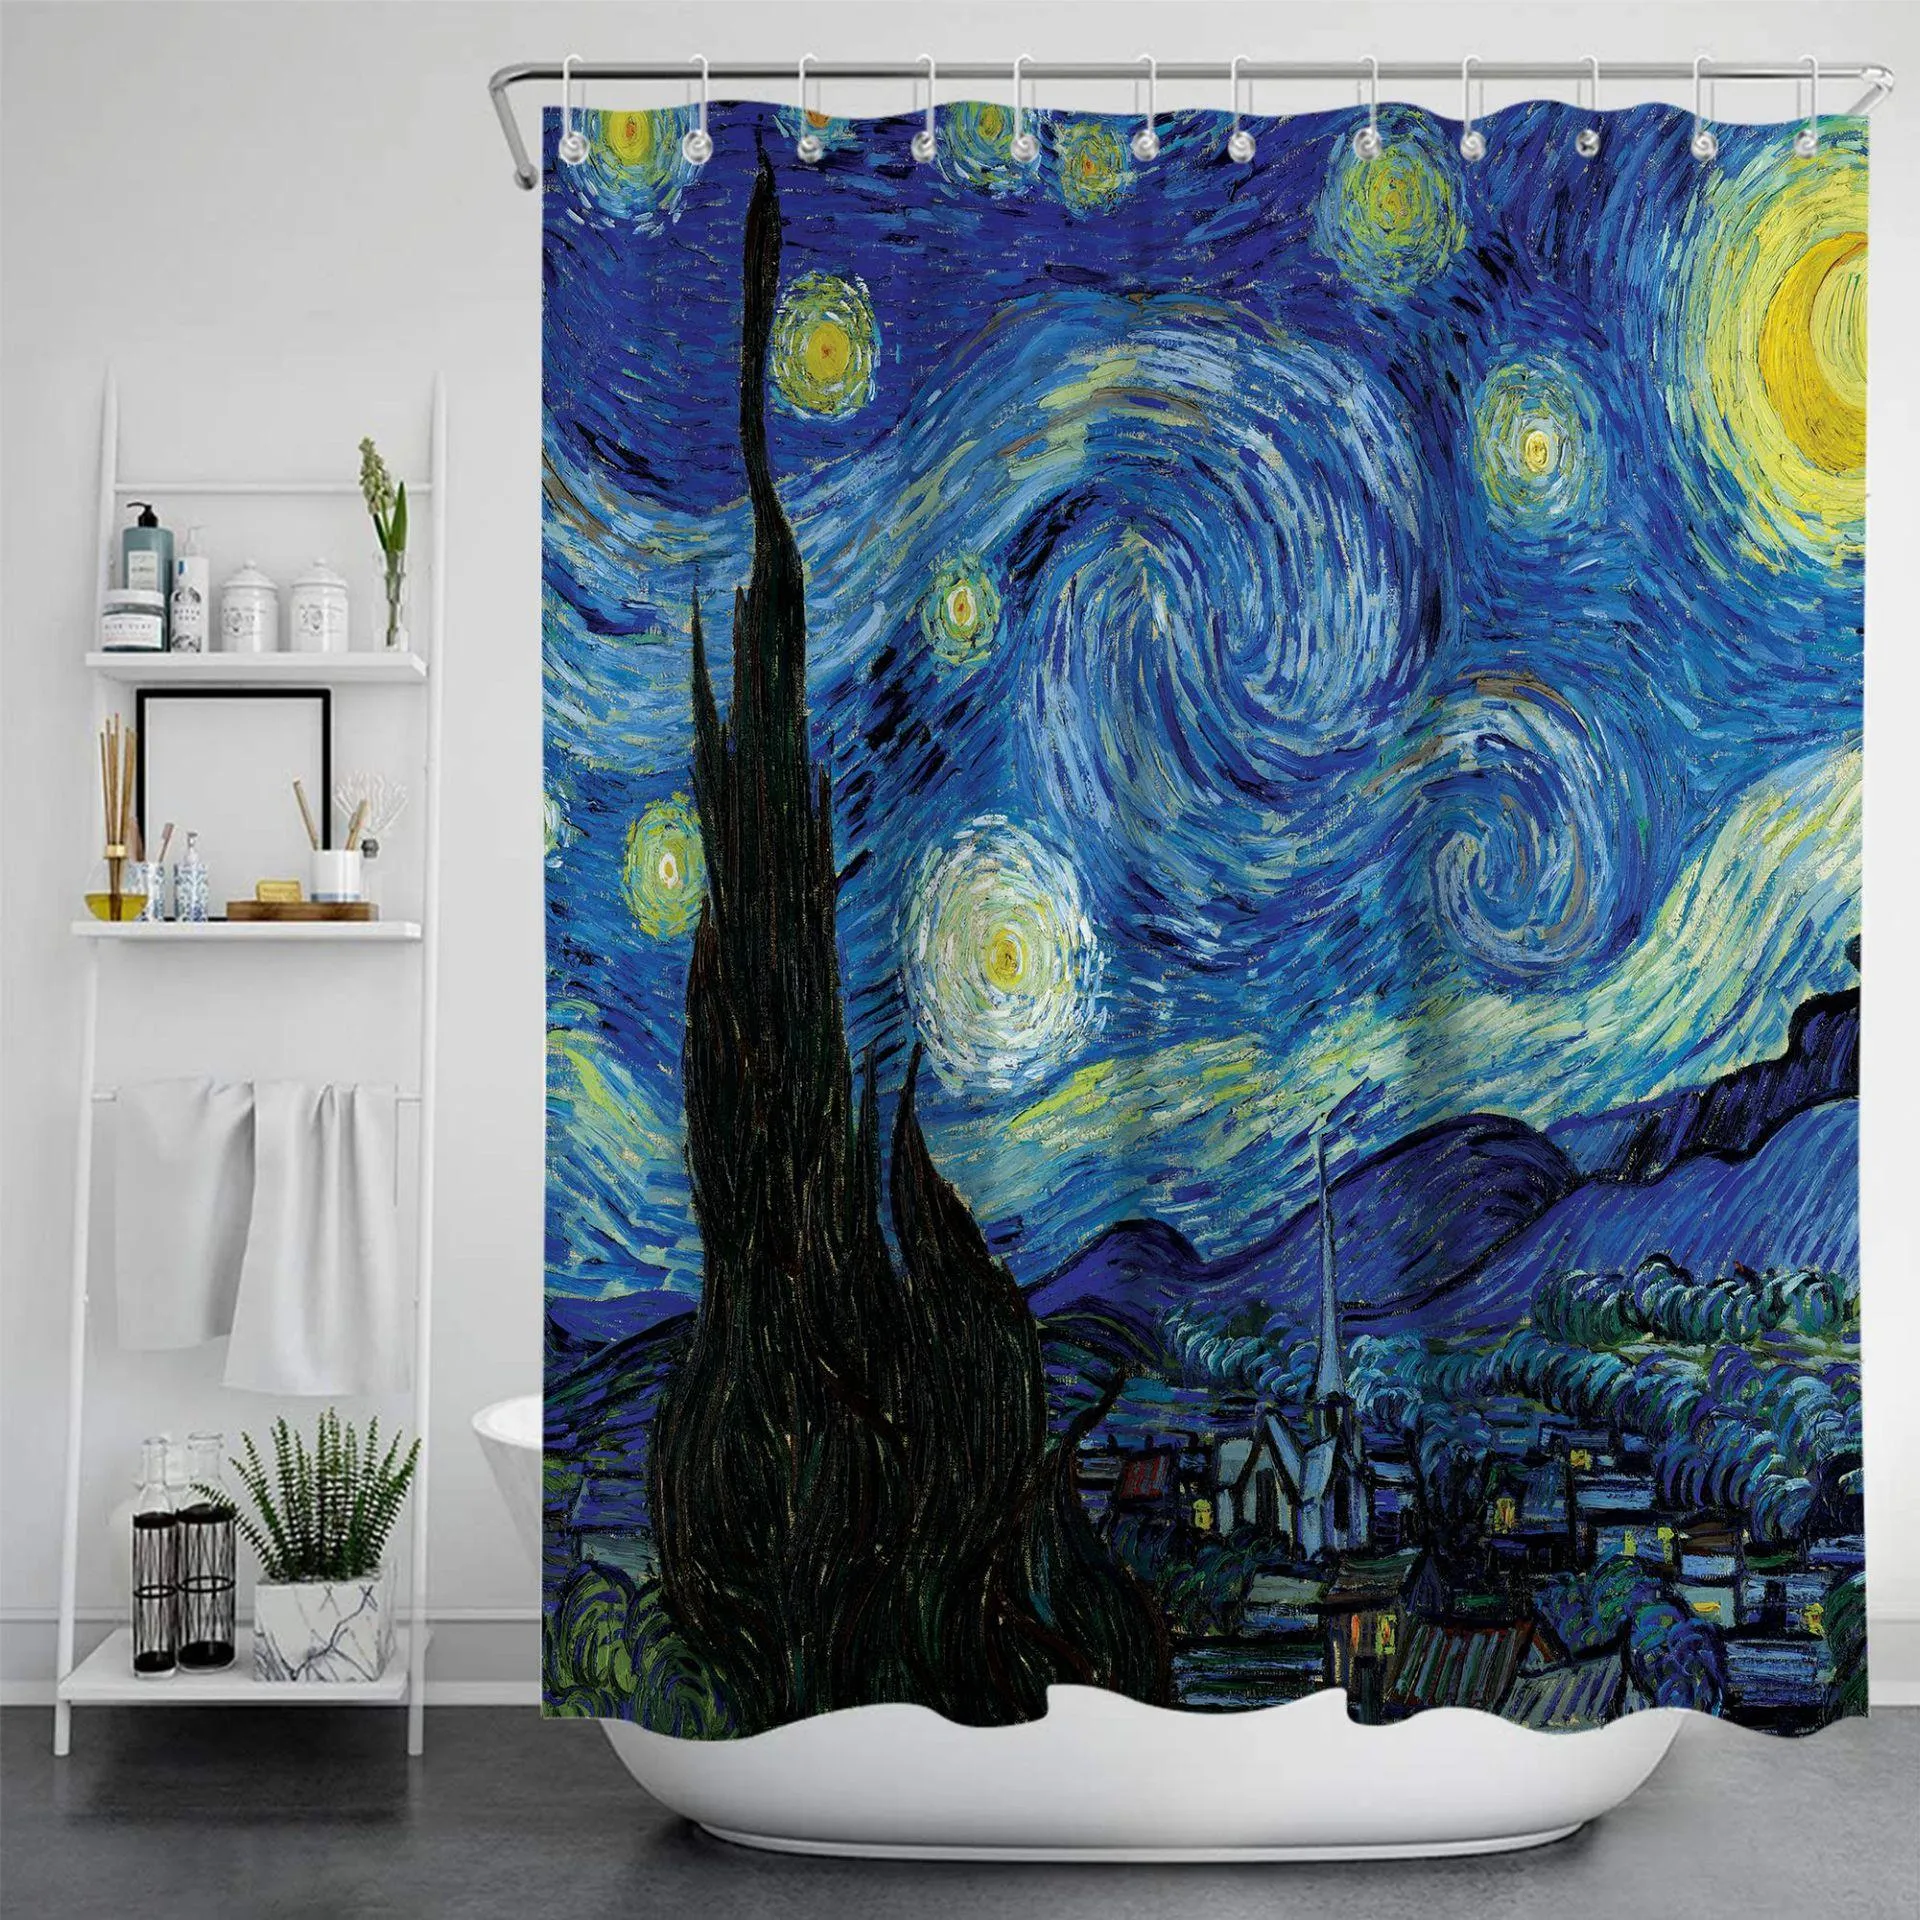 Rideaux Van Gogh Art peinture rideaux de douche salle de bain impression 3D tissu imperméable avec crochet motif géométrique rideau de baignoire décoratif